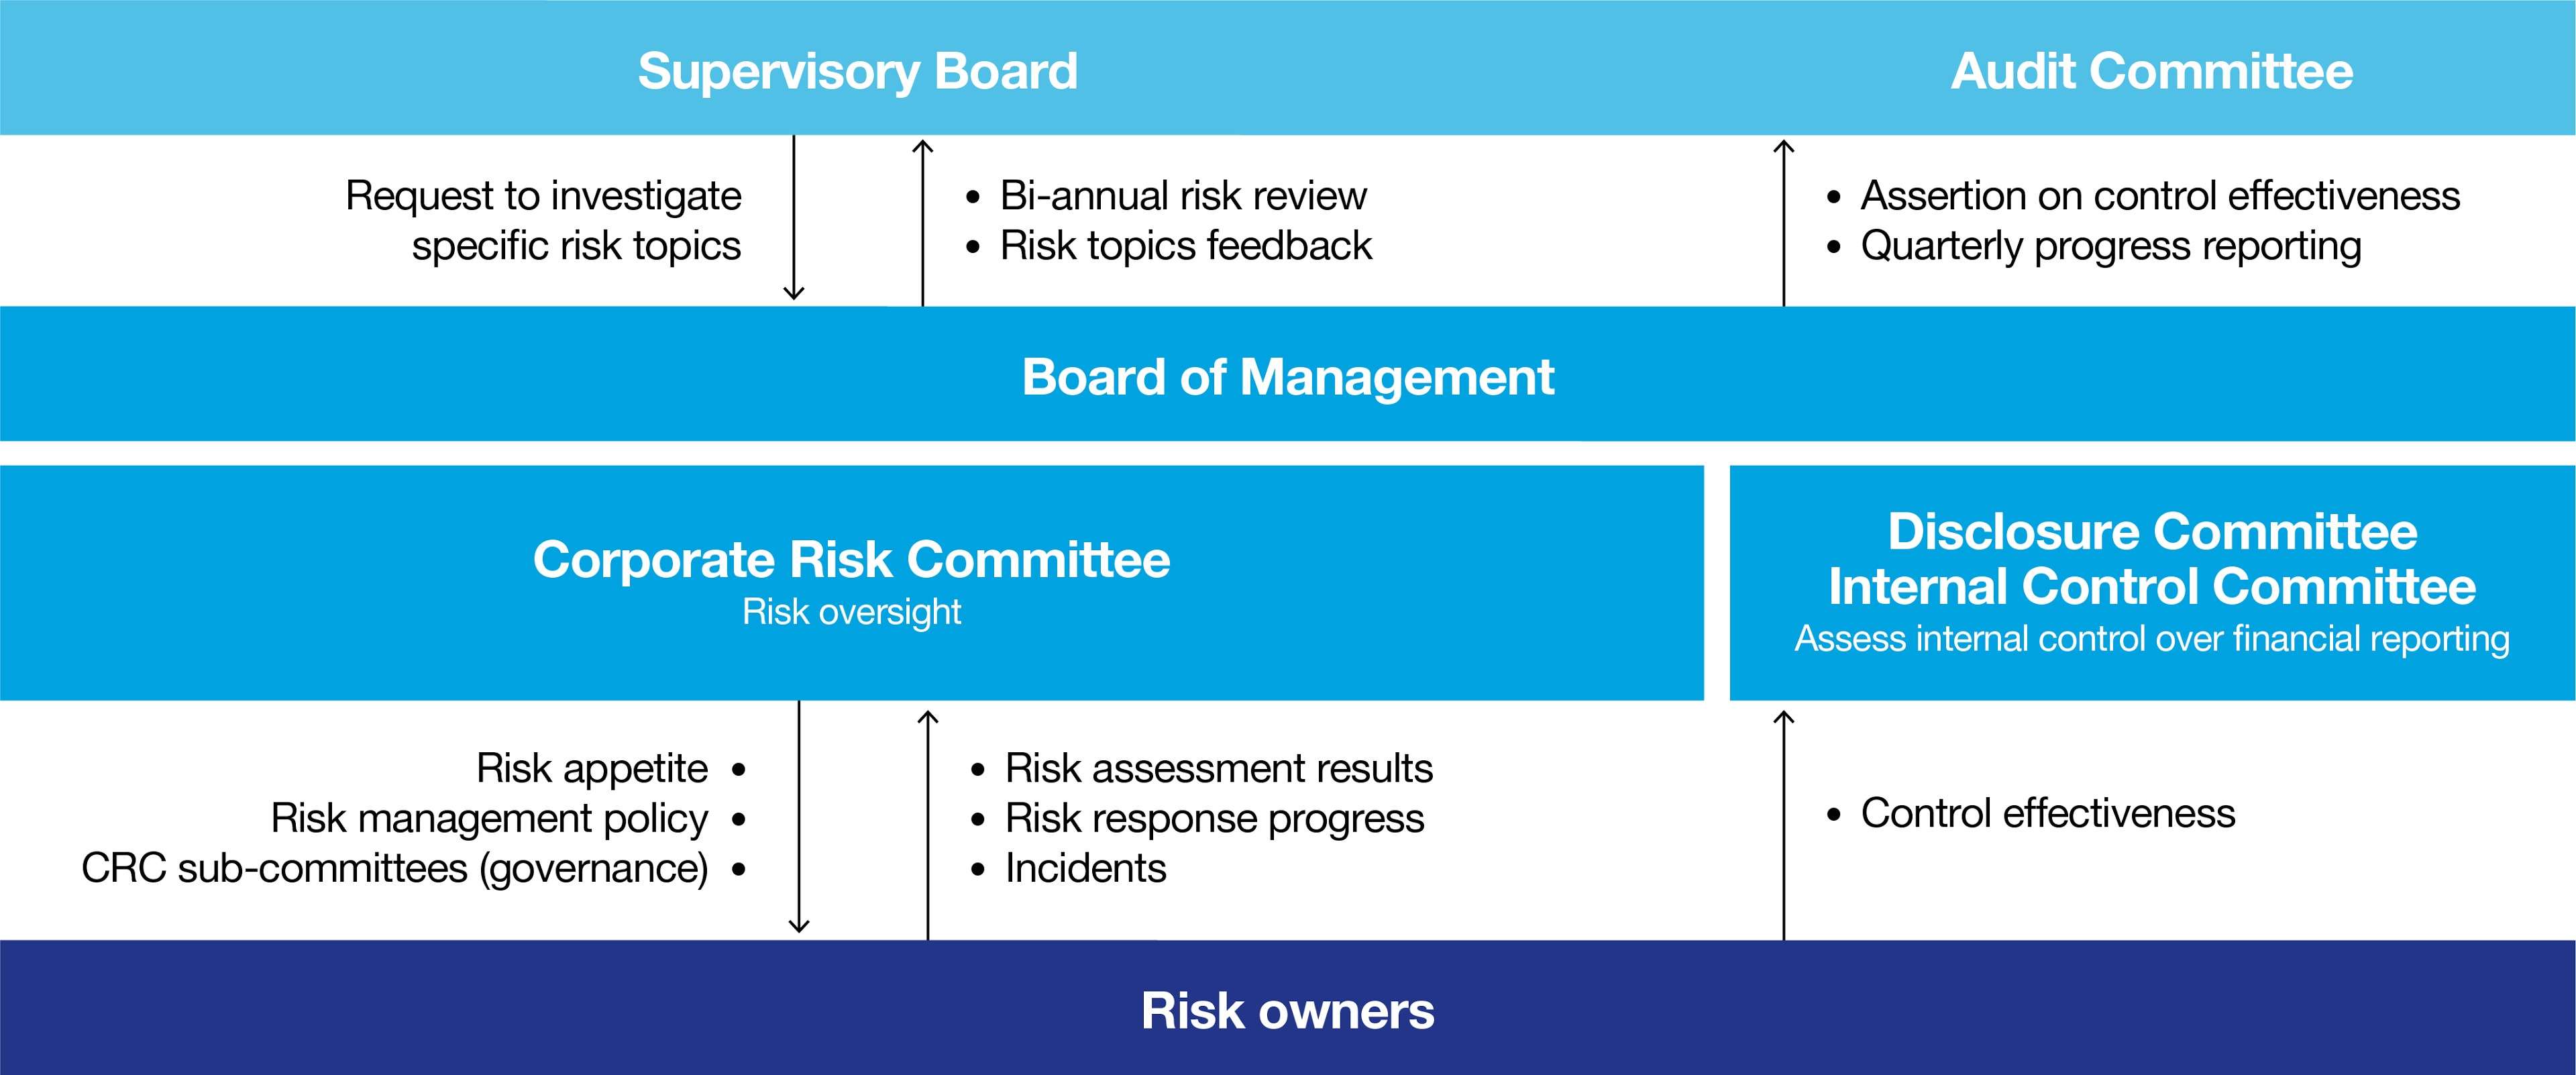 riskmanagementgovernance2019.jpg